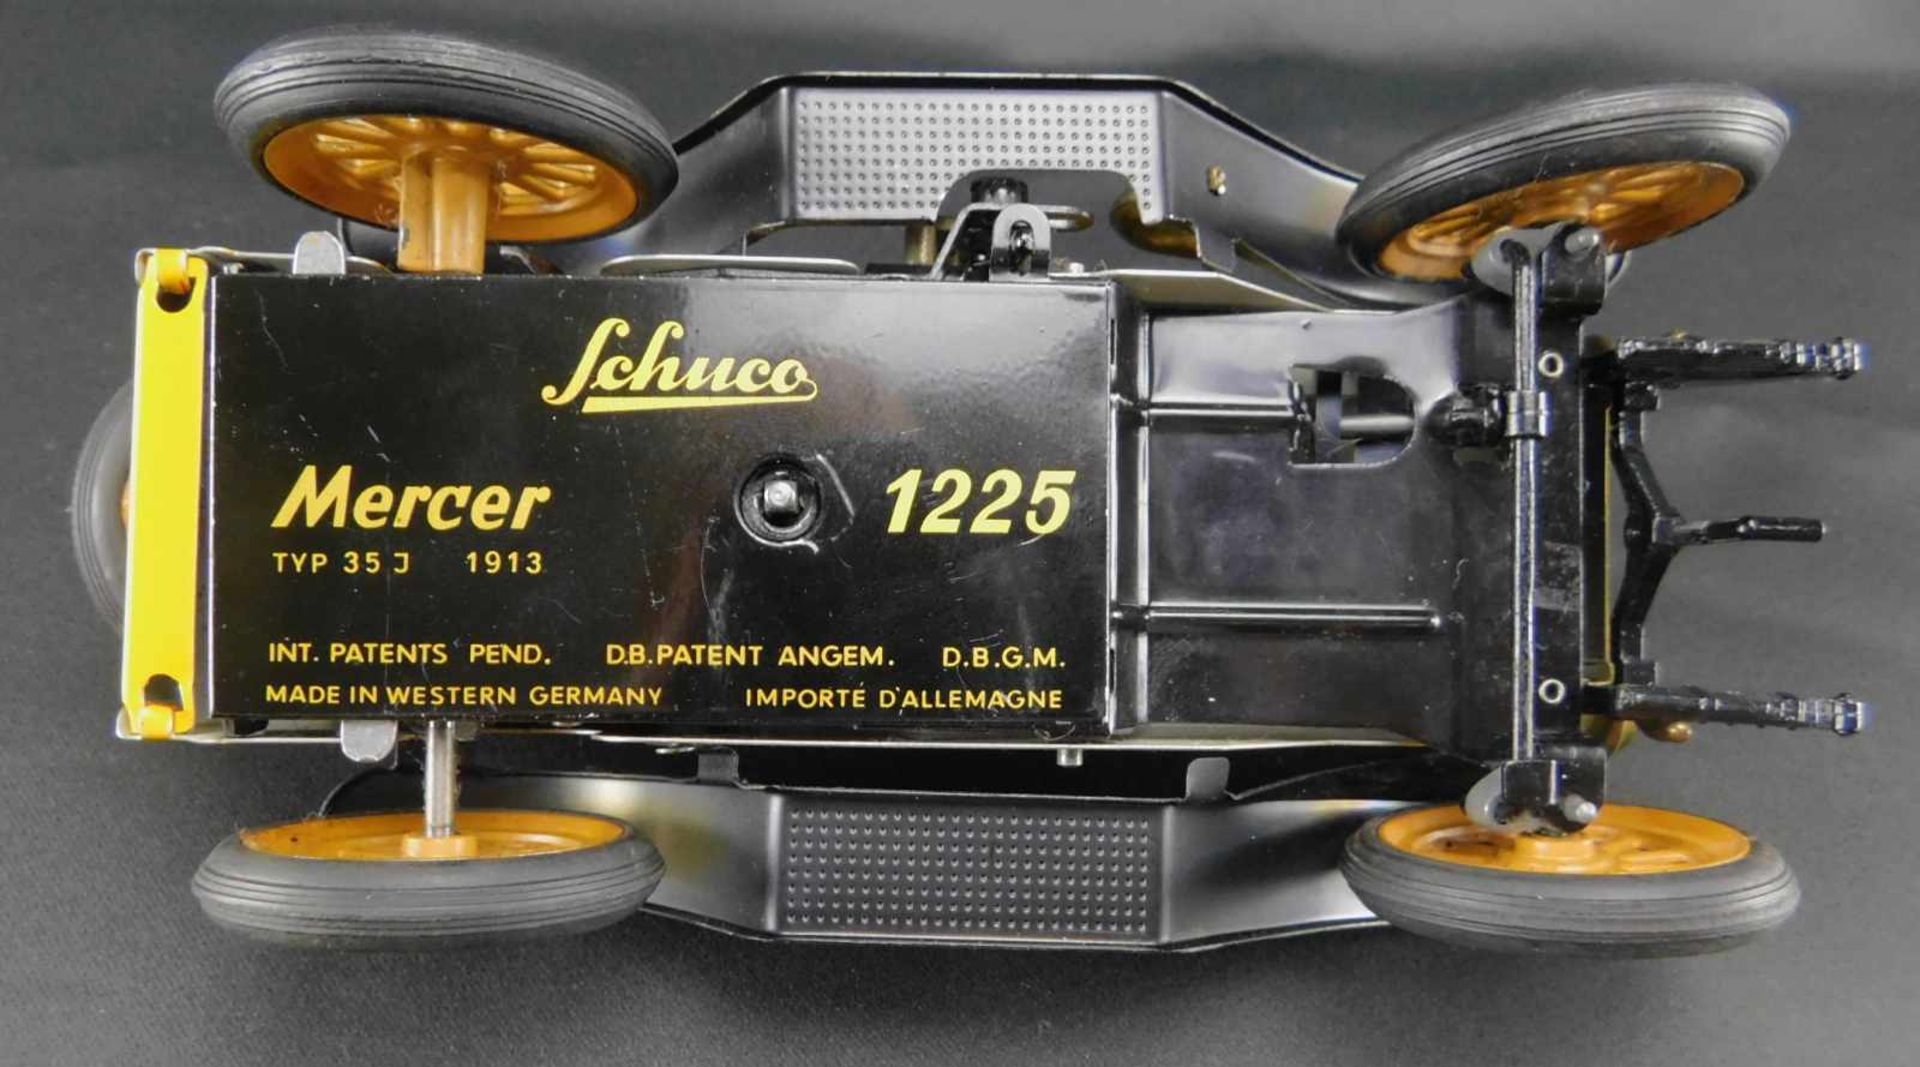 Modellauto Schuco, Mercer 1225 Typ 35J, 1913, Blechmodellmit Aufzug und Schlüssel. Wagen fährt - Image 3 of 4